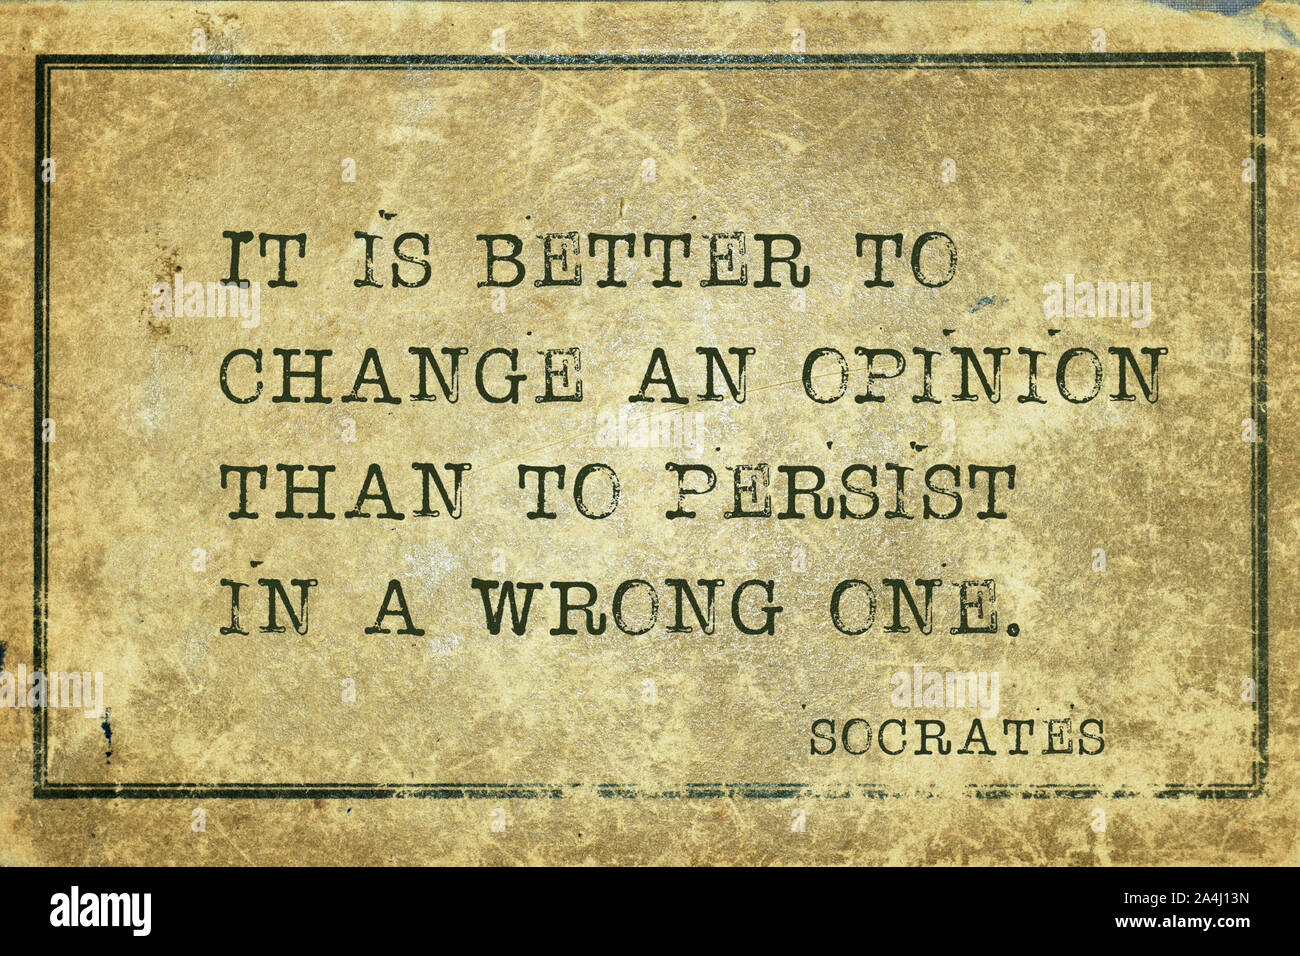 È meglio cambiare un parere rispetto a persistere in una sbagliata - antico filosofo greco Socrate preventivo stampato su grunge cartone vintage Foto Stock